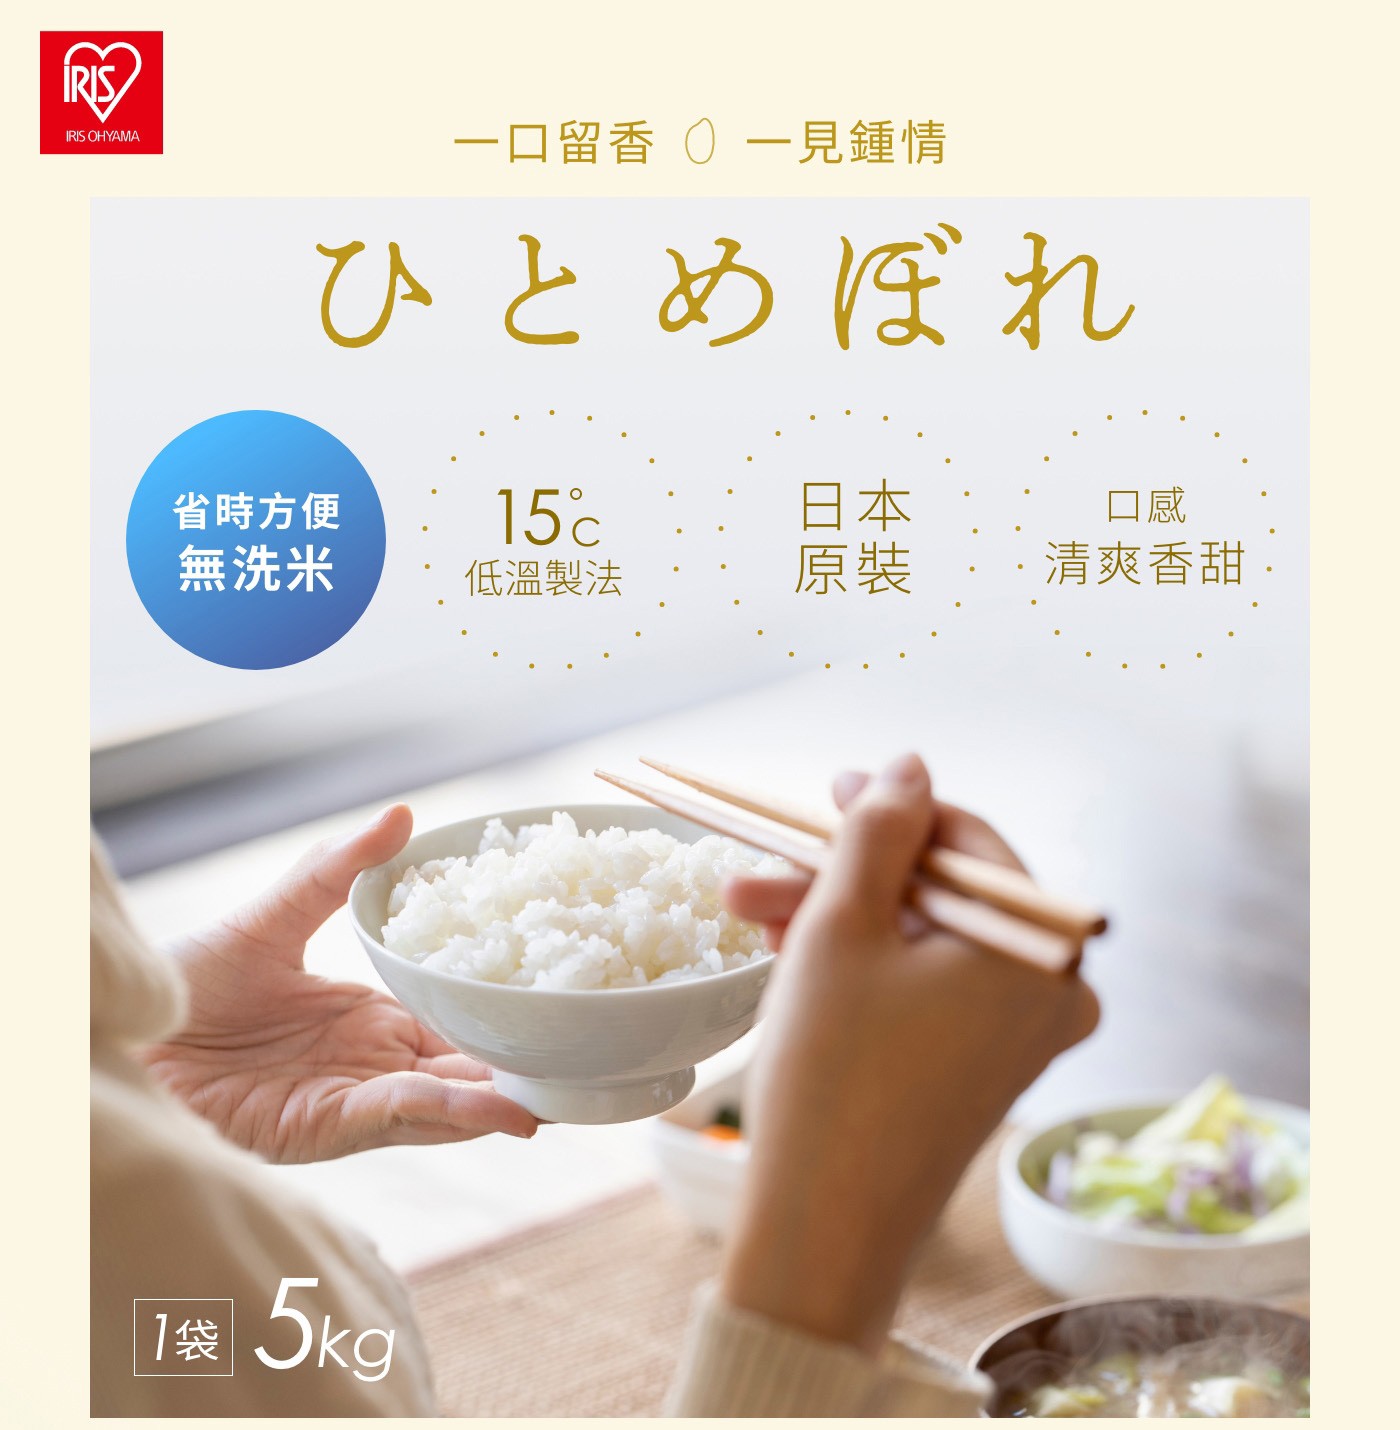 Iris Ohyama 低溫製法無洗米 省時方便 使用15度低溫製法 日本原裝 口感香甜